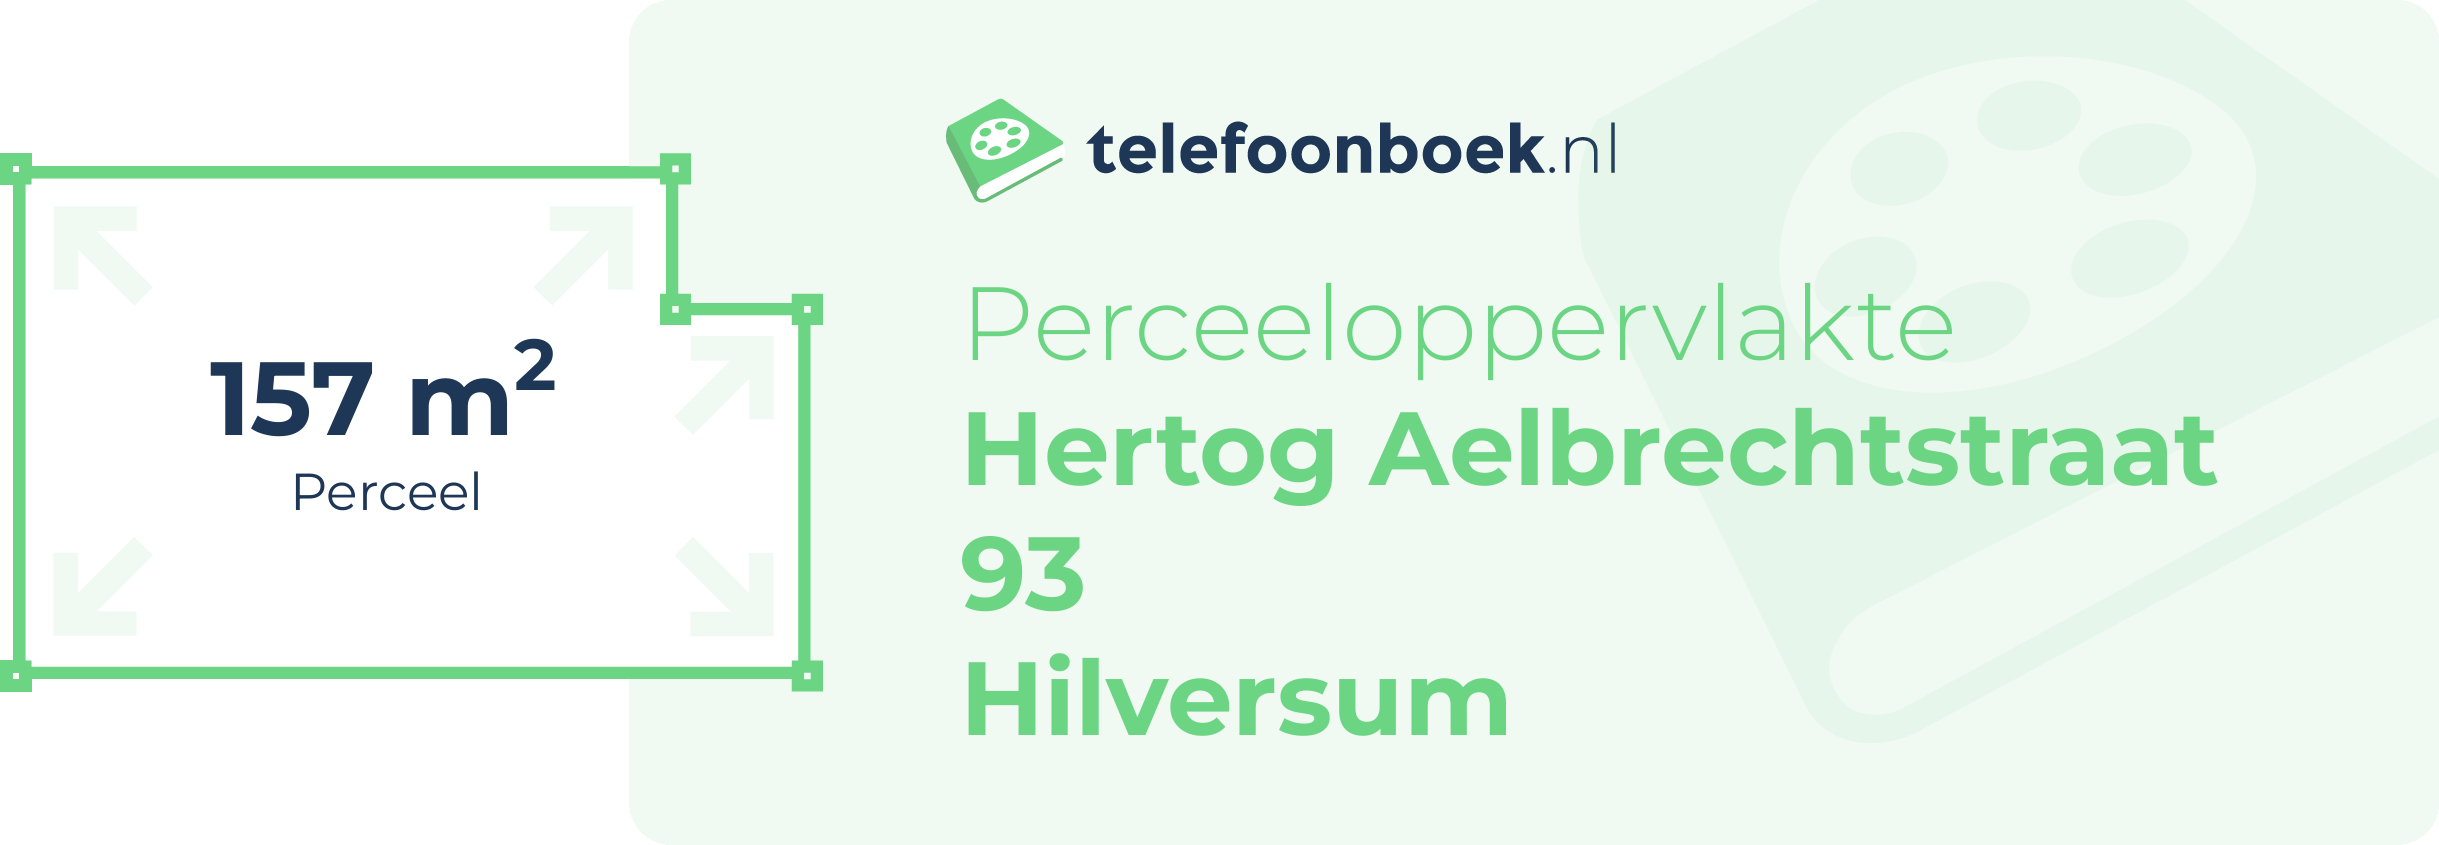 Perceeloppervlakte Hertog Aelbrechtstraat 93 Hilversum